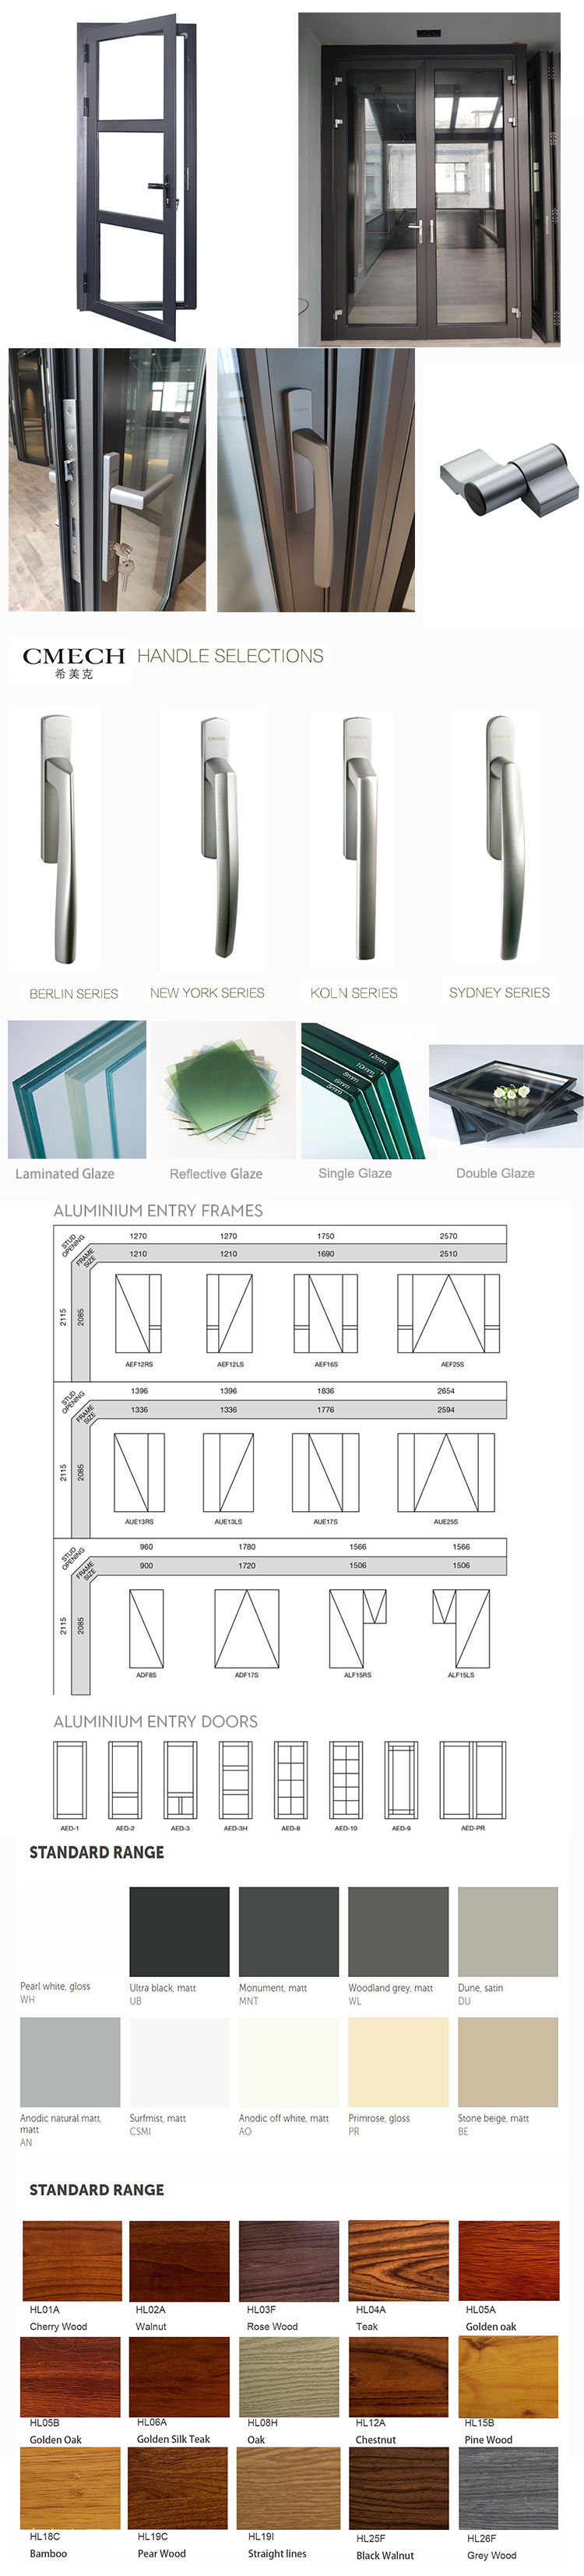 Design Aluminium Front House Glass Door Price